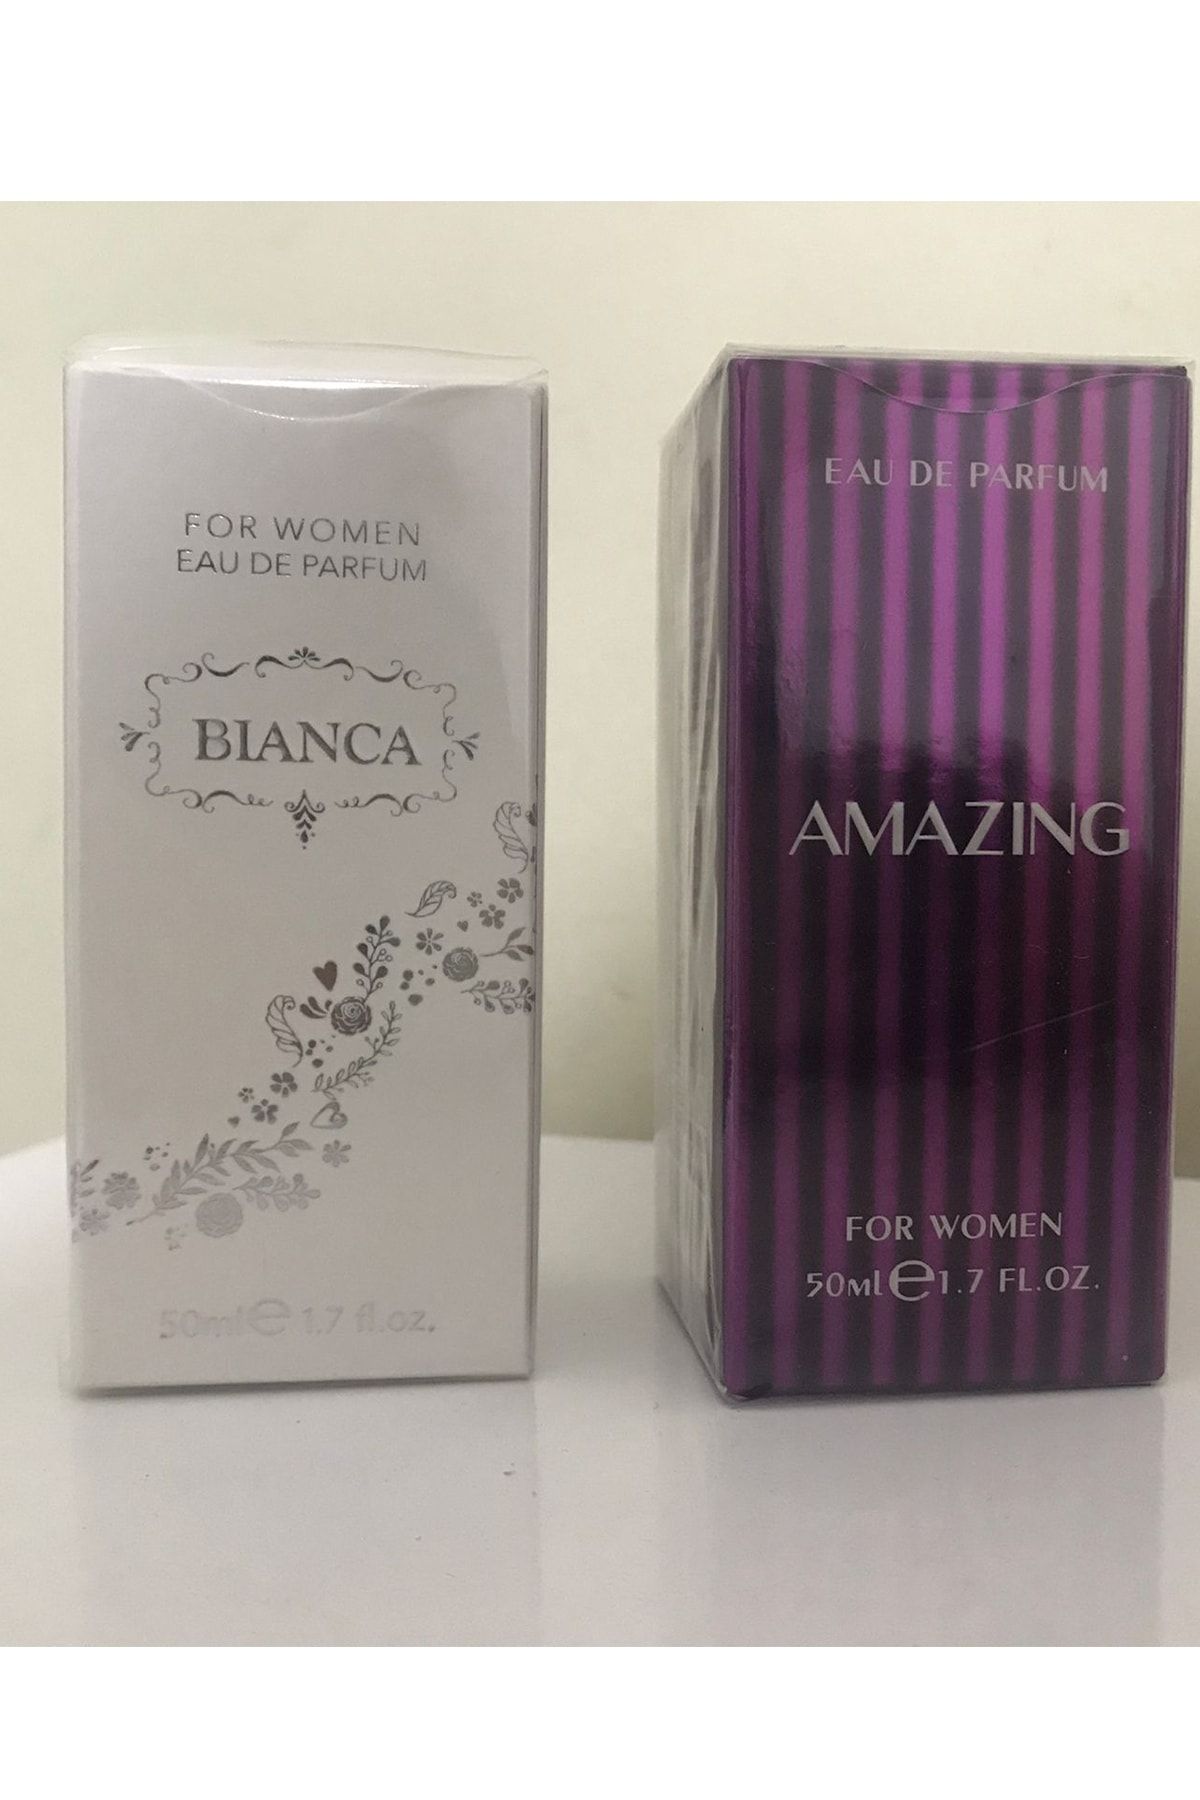 Farmasi Bianca Kadın Parfüm ve Amazing Kadın Parfüm Seti